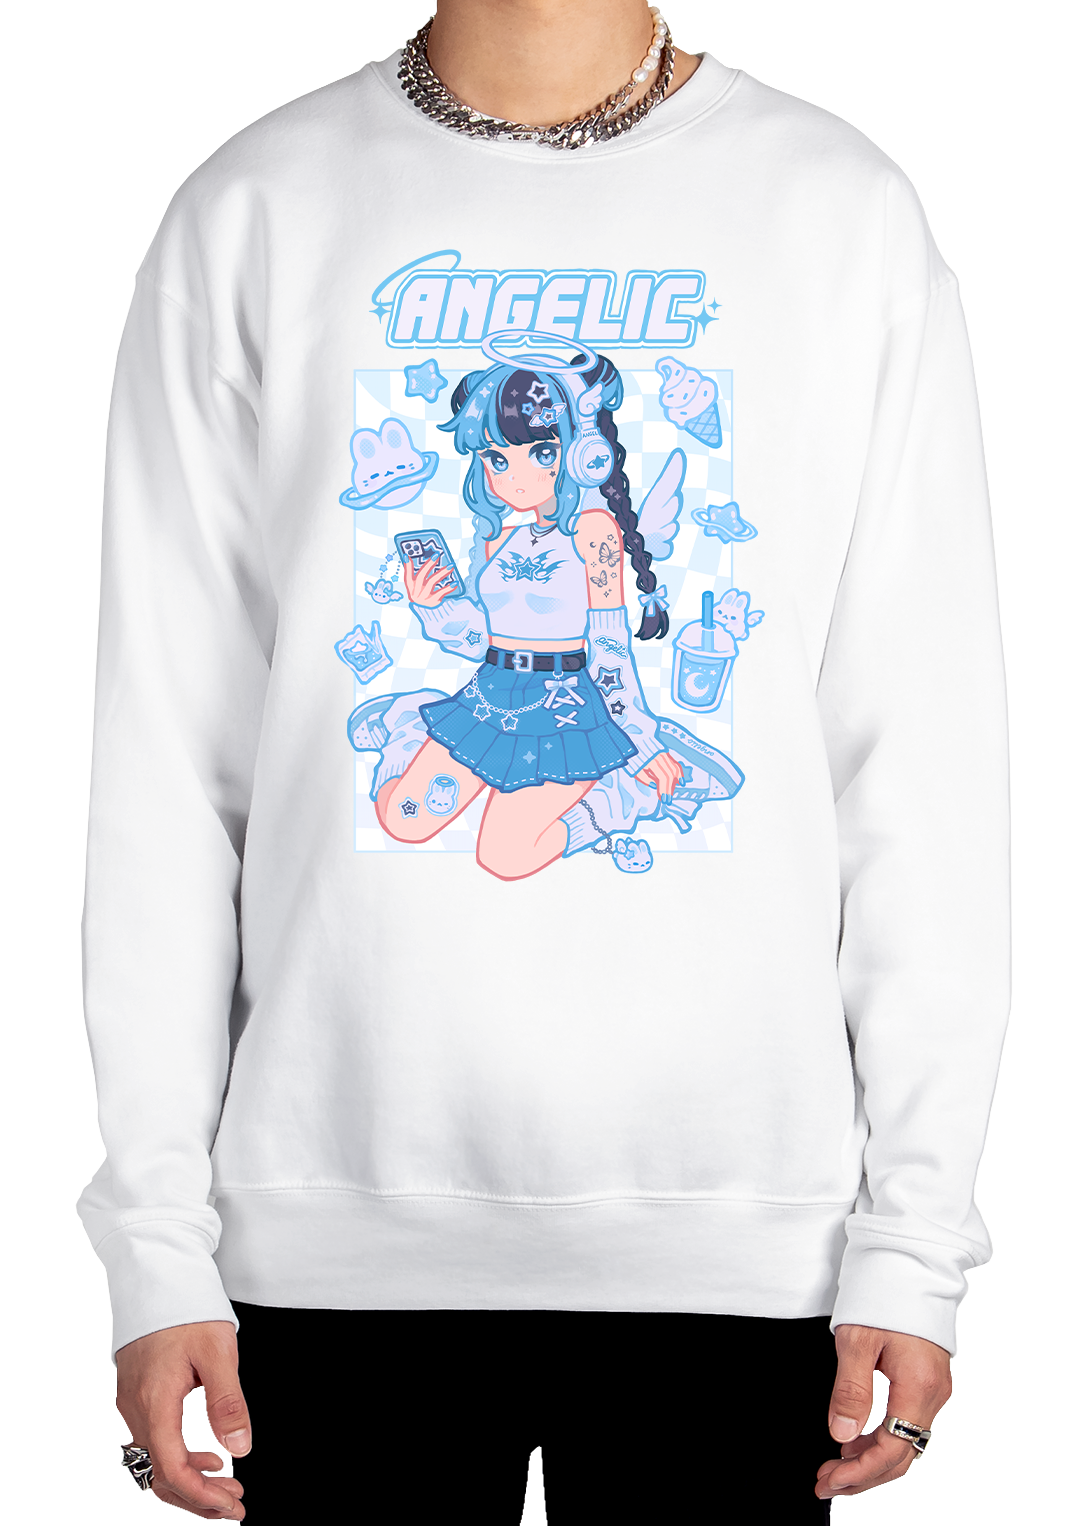 Angelic Sweatshirt